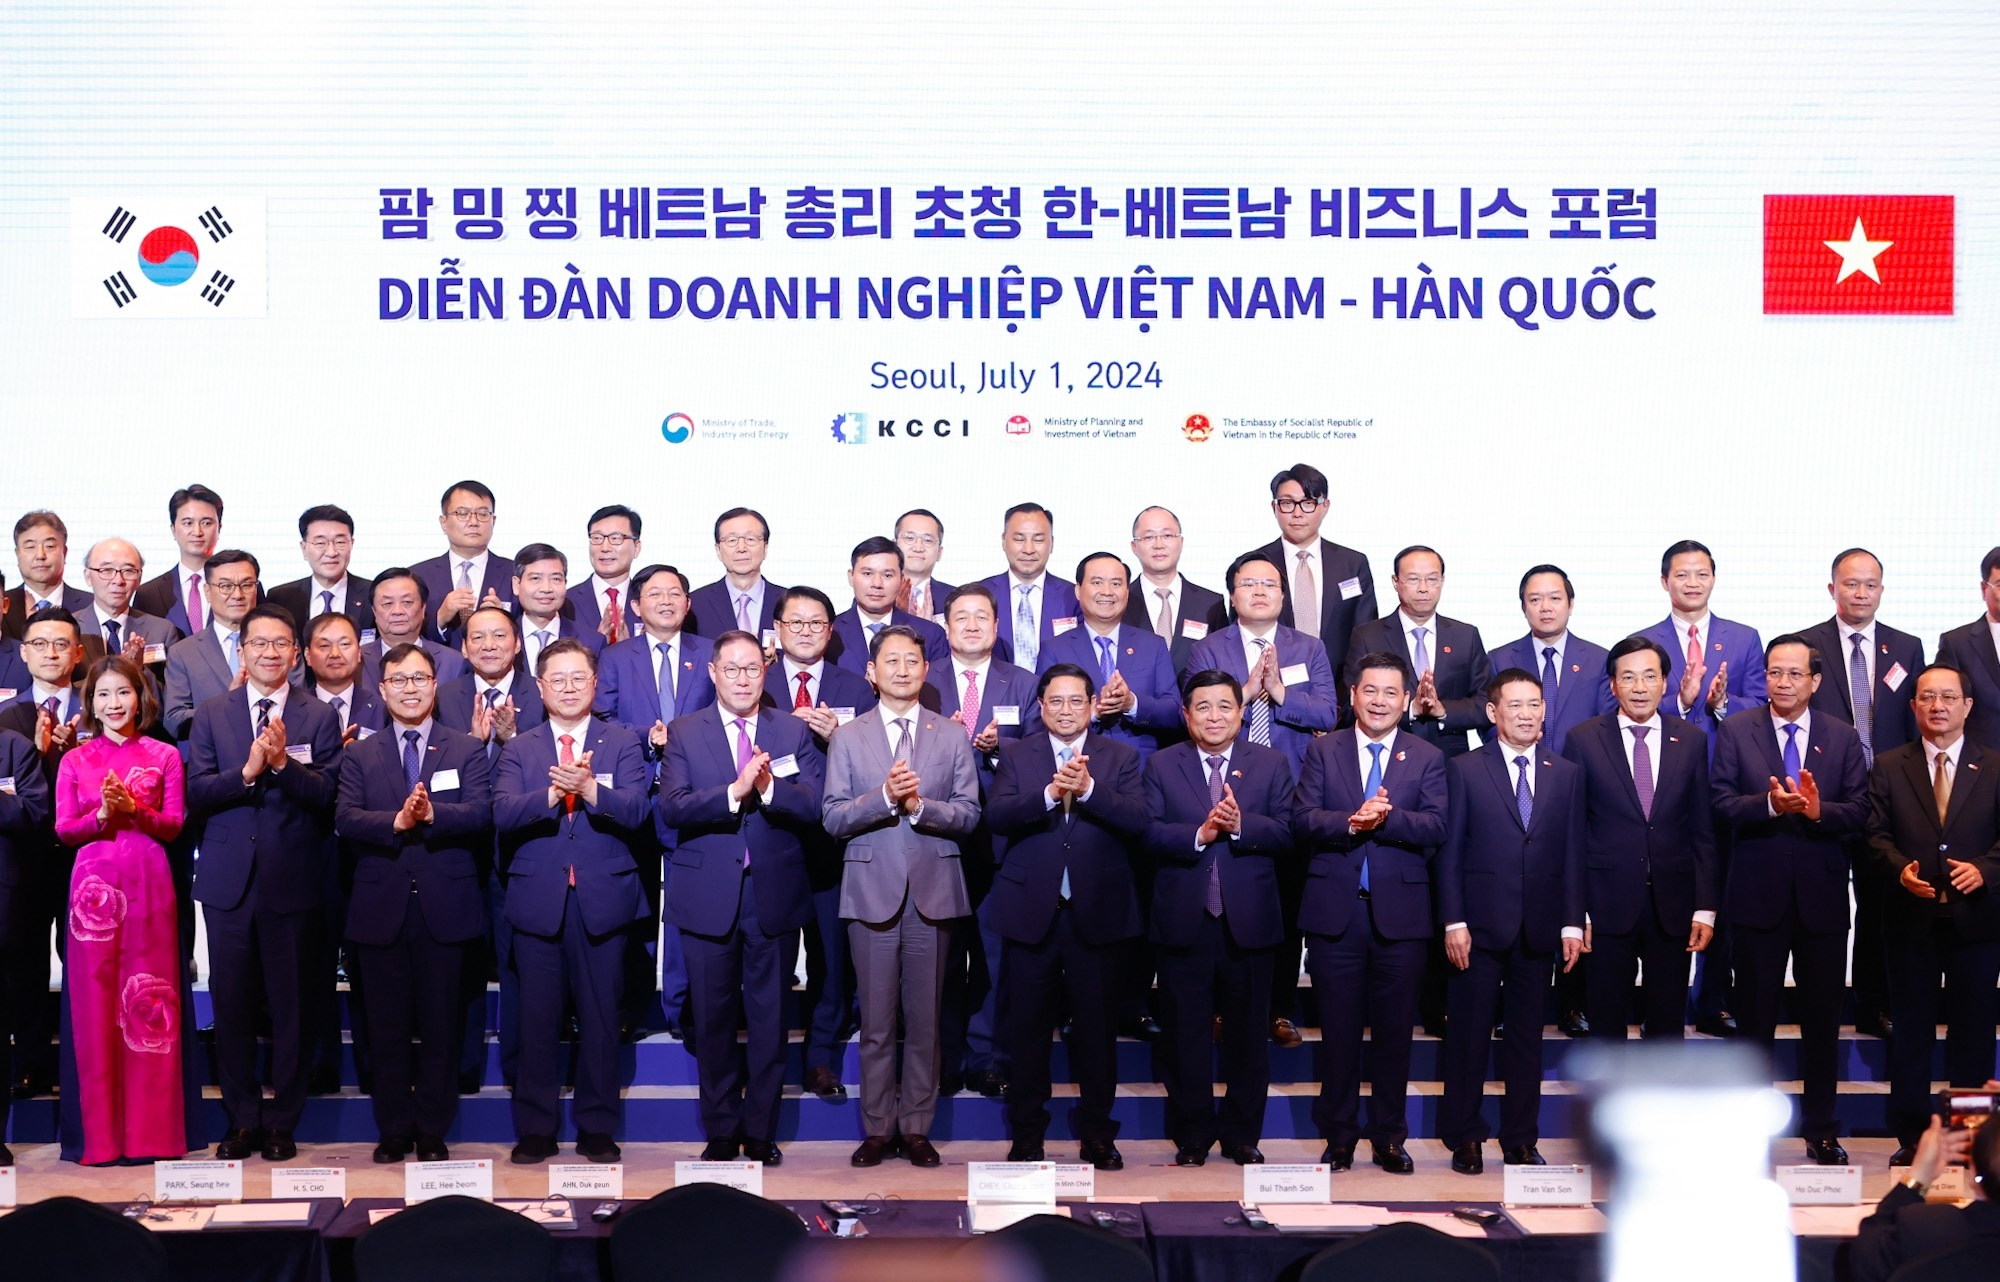 Lễ trao đổi biên bản thỏa thuận hợp tác diễn ra trong khuôn khổ Diễn đàn Doanh Nghiệp Việt Nam - Hàn Quốc được tổ chức tại Seoul (Hàn Quốc)